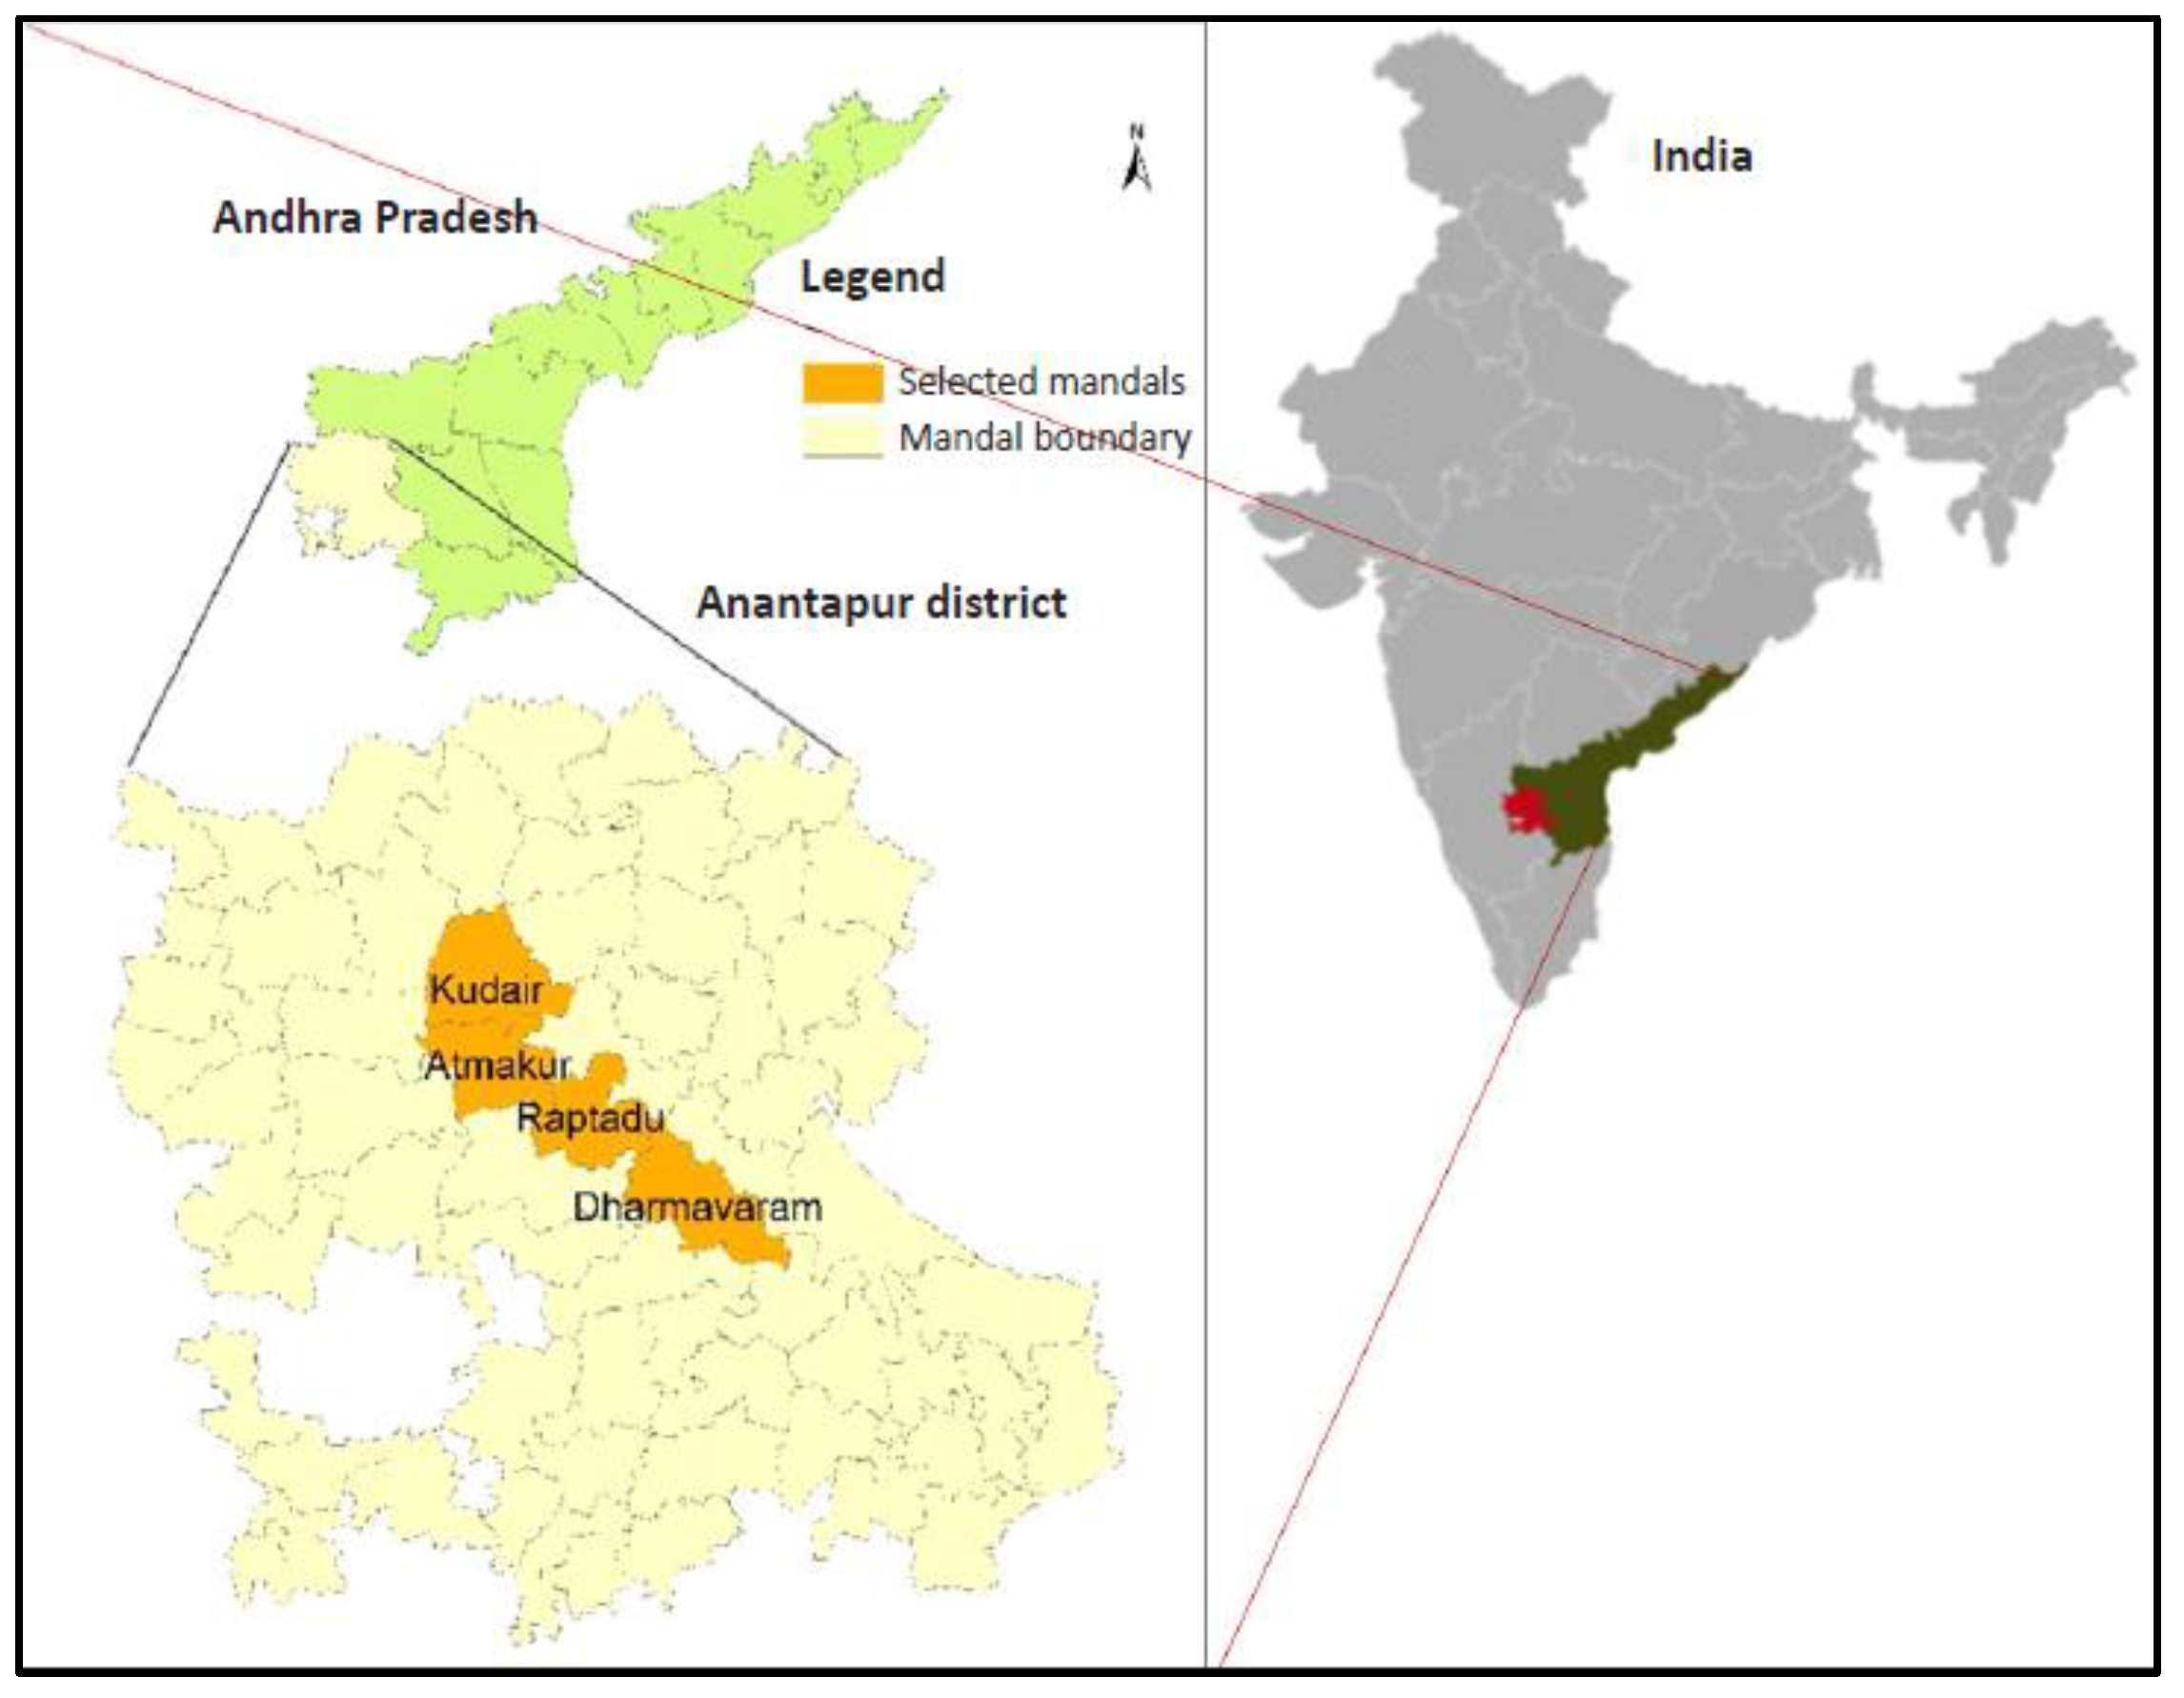 Andhra Pradesh: How drug smugglers are using Google Maps to evade